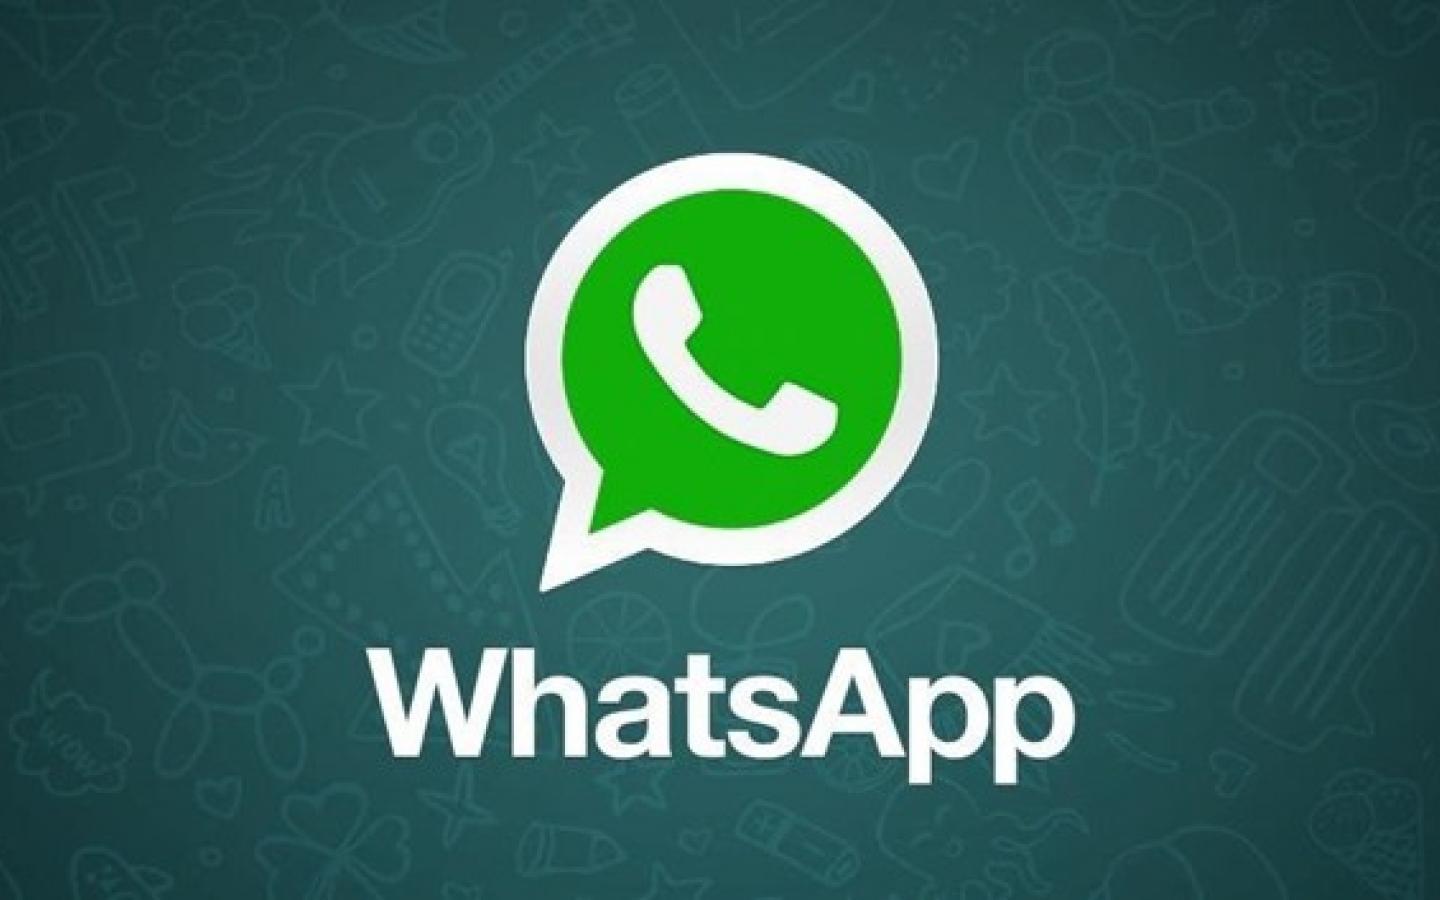 whatsapp-green-brands-logos_0